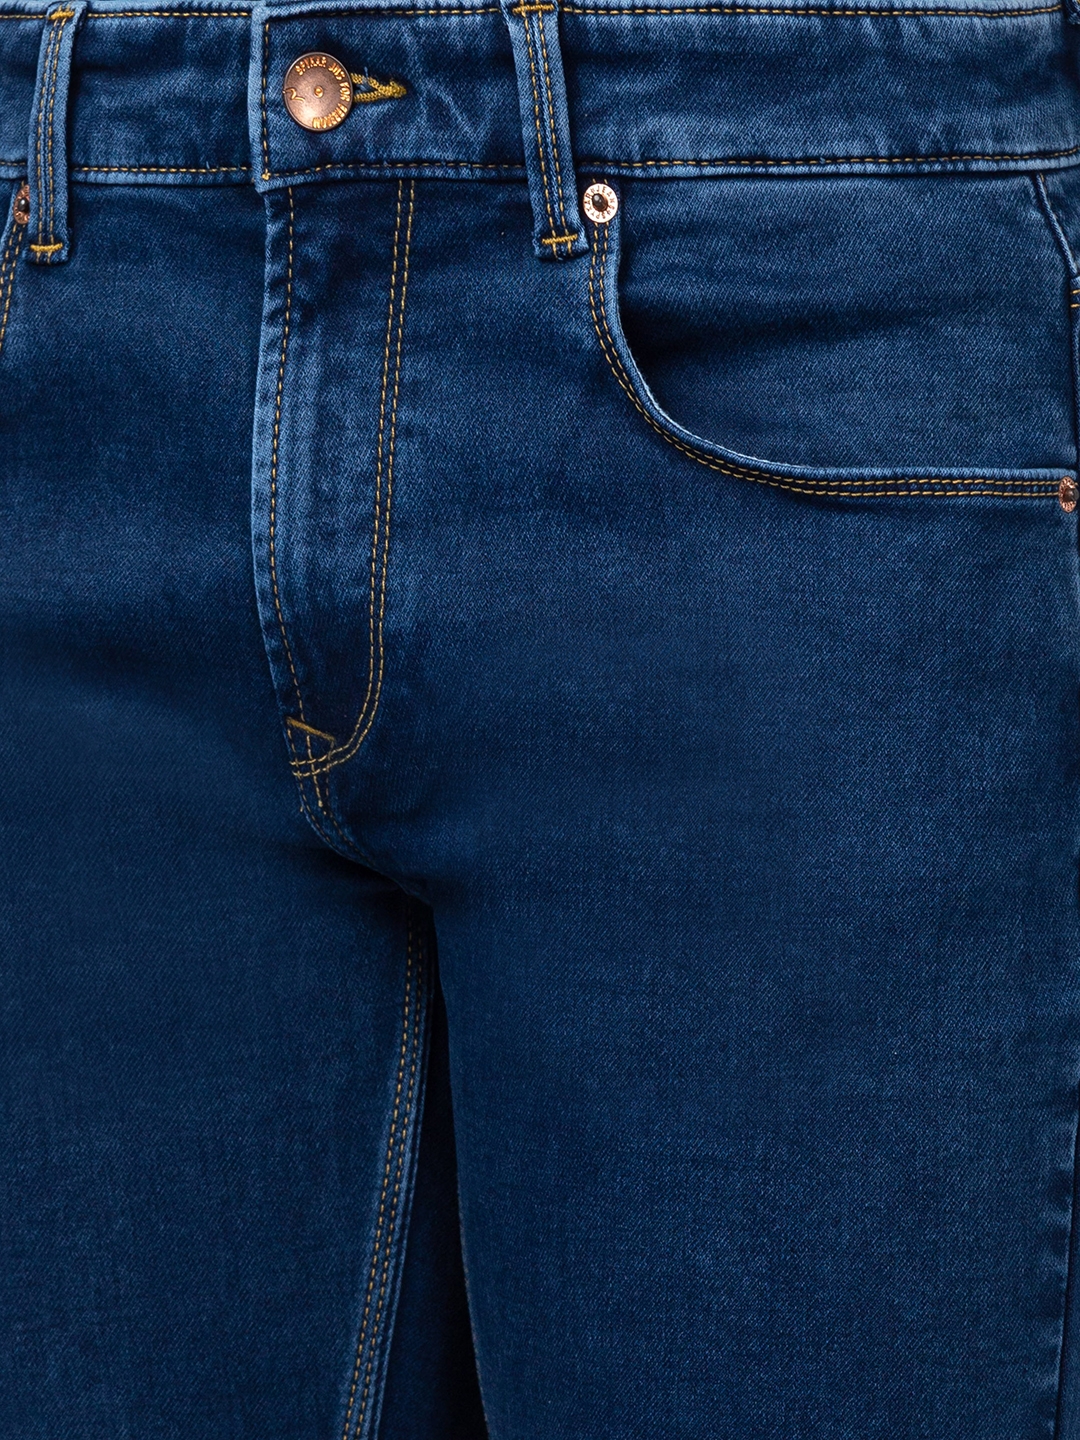 spykar | Men's Blue Cotton Jeans 4